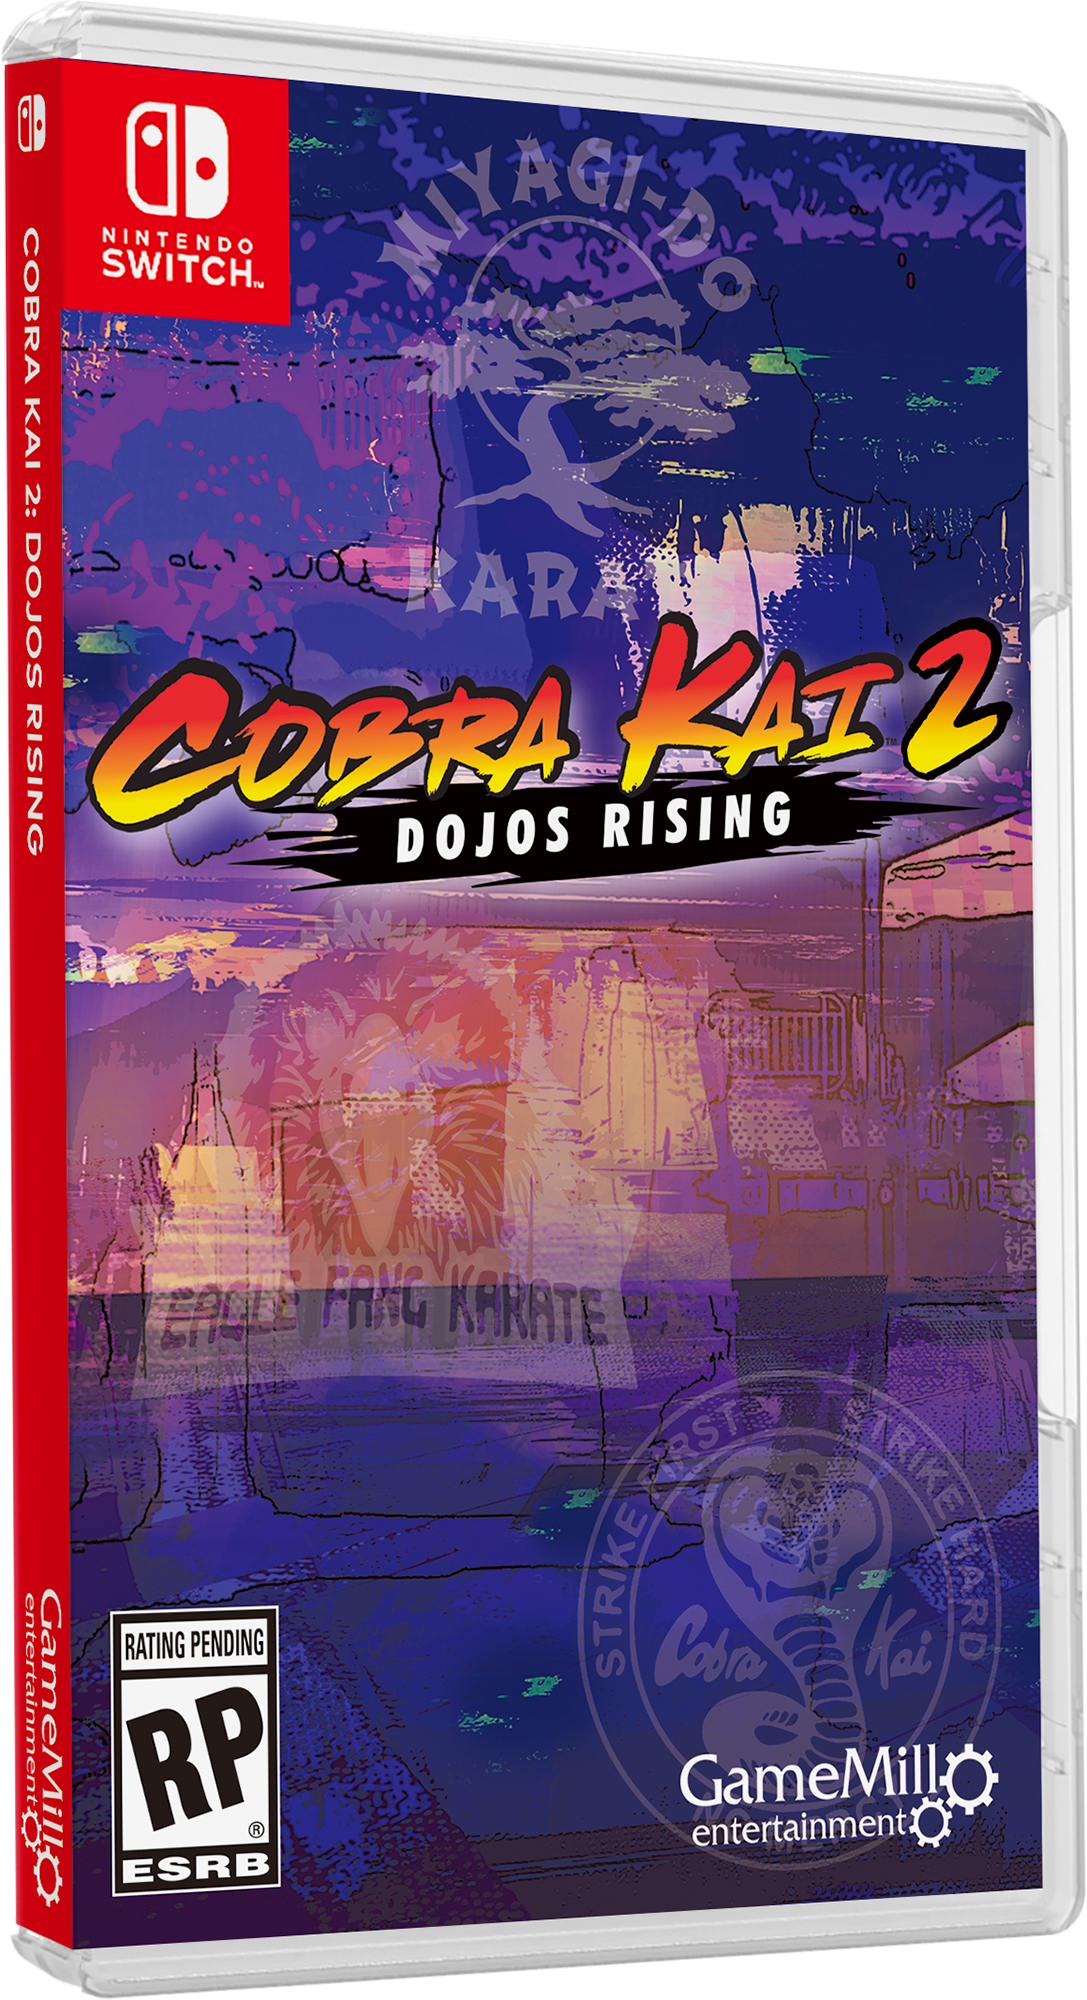 Cobra Kai 2: Dojos Rising, Jogos para a Nintendo Switch, Jogos